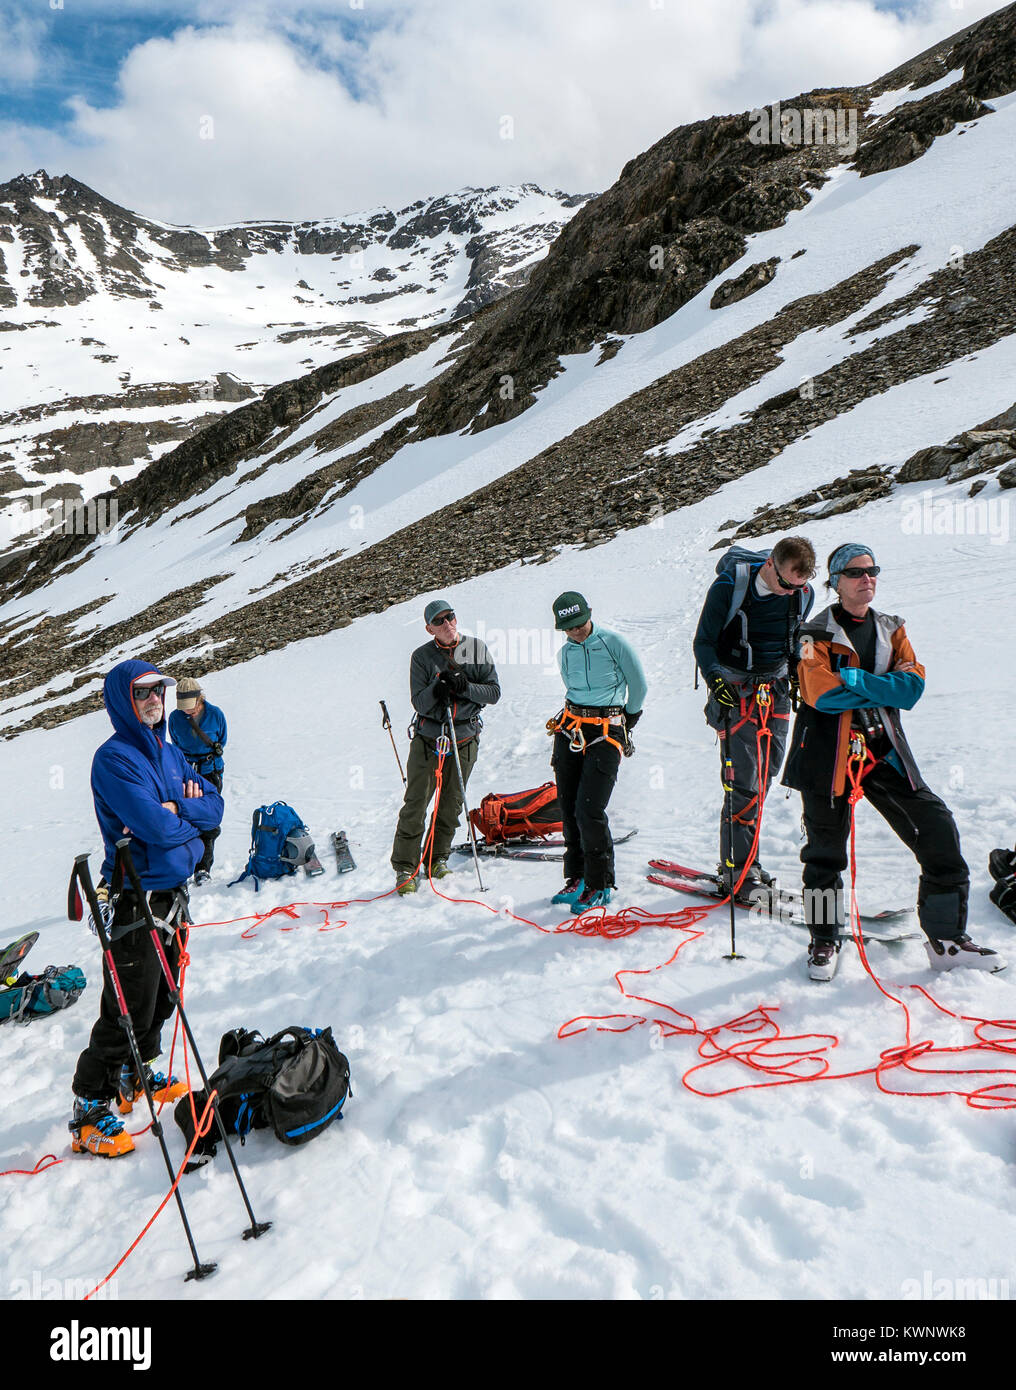 La pratique du ski alpin dans l'emplacement délimité glaciar croisements ; Glaciar Martial ; le mont Krund ; Cerro Castor ; près de Ushuaia ; Argentinanear ; Ushuaia Argentine Banque D'Images